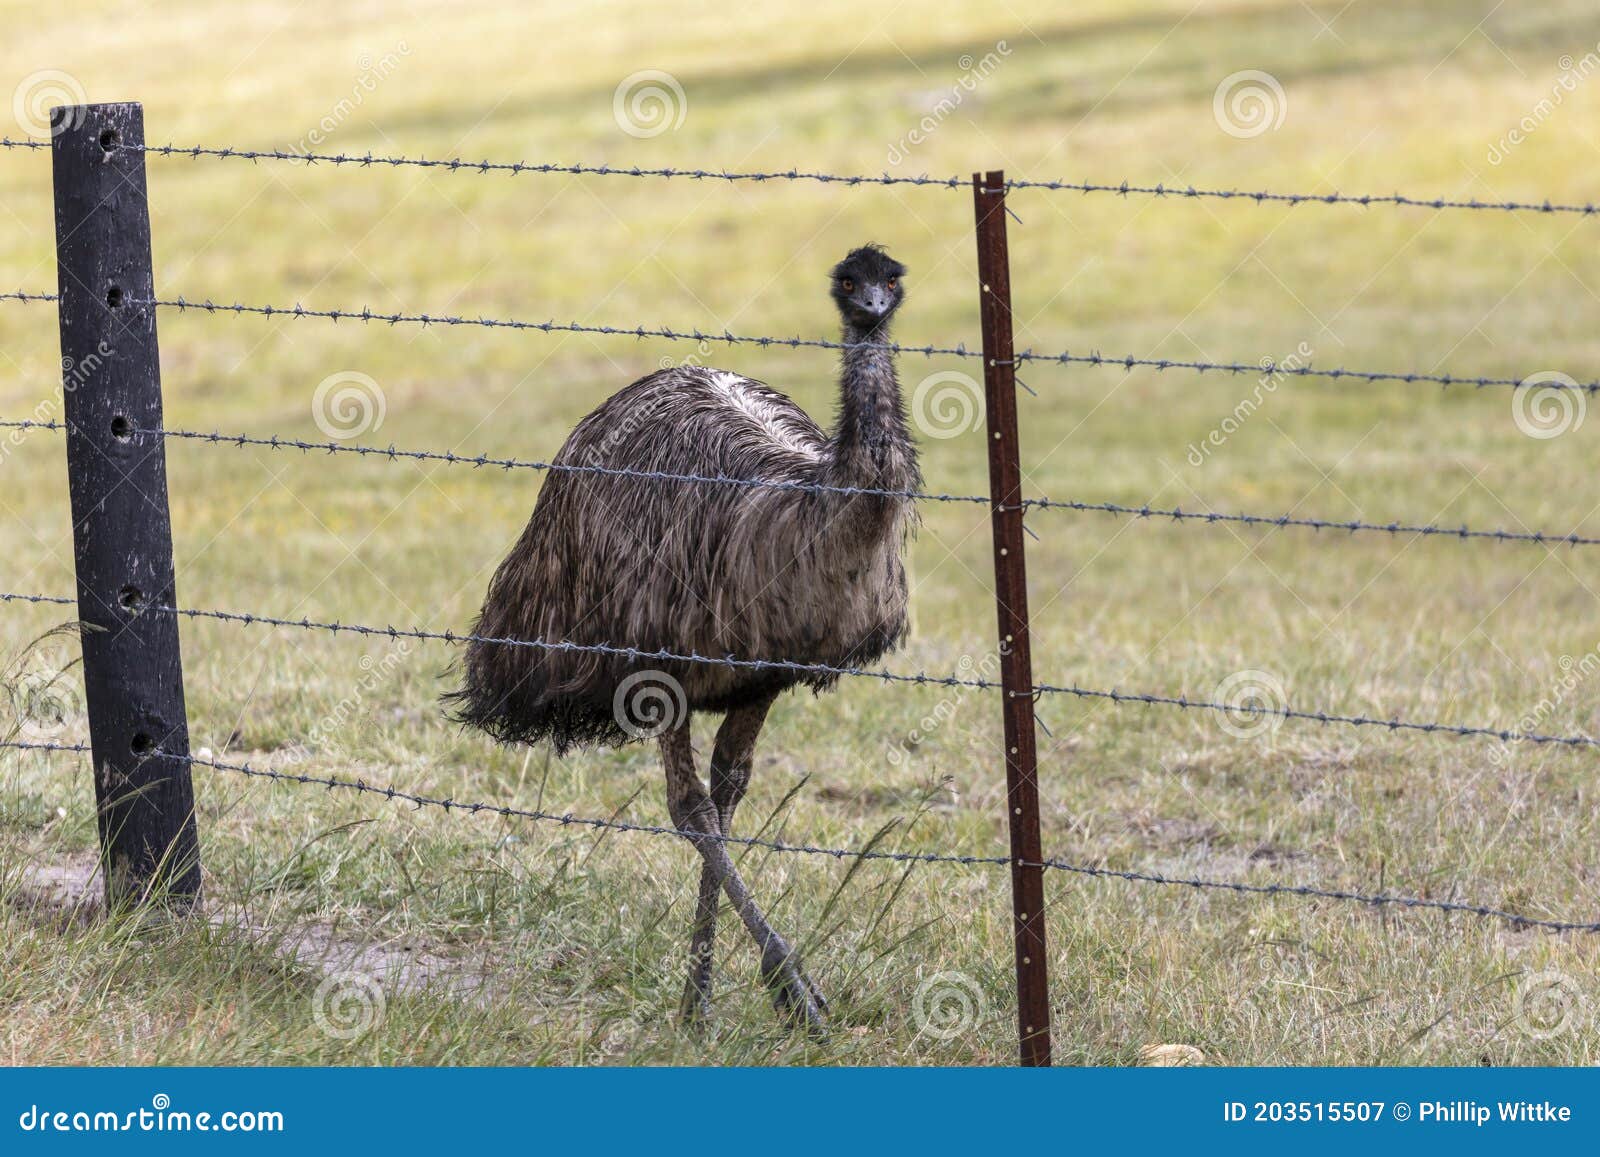 ein-australisches-emu-das-auf-einen-stacheldrahtzaun-regionaler-australien-geht-im-hinterland-203515507.jpg